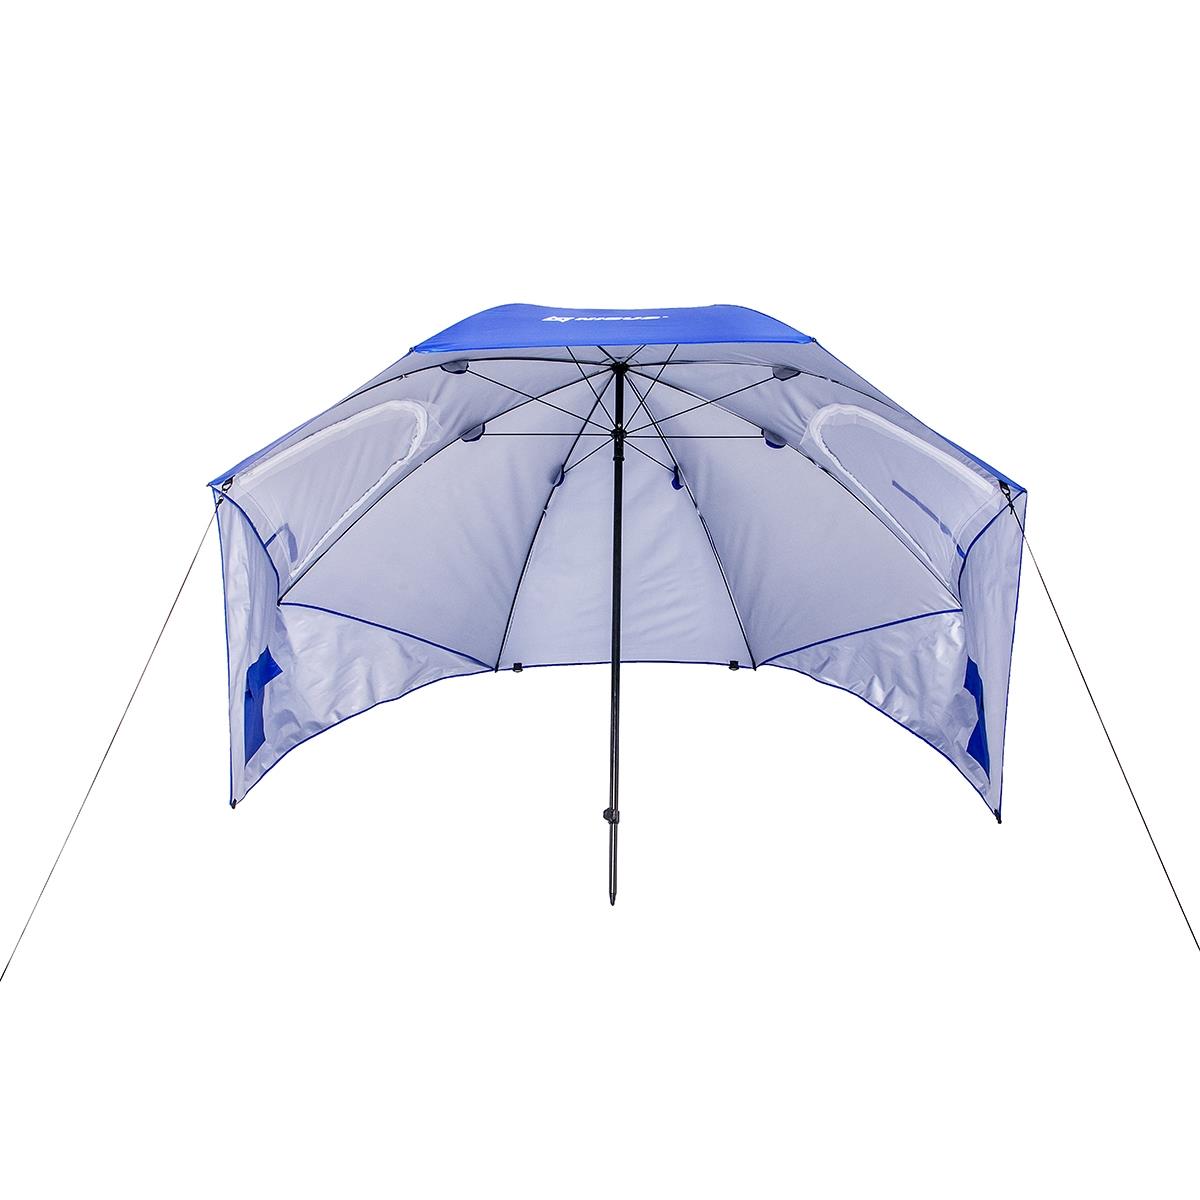 Зонт с ветрозащитой Ø 2,1 м N-240-WP Nisus зонт пляжный d 2 4м с наклоном 28 32 210d na 240n lg nisus